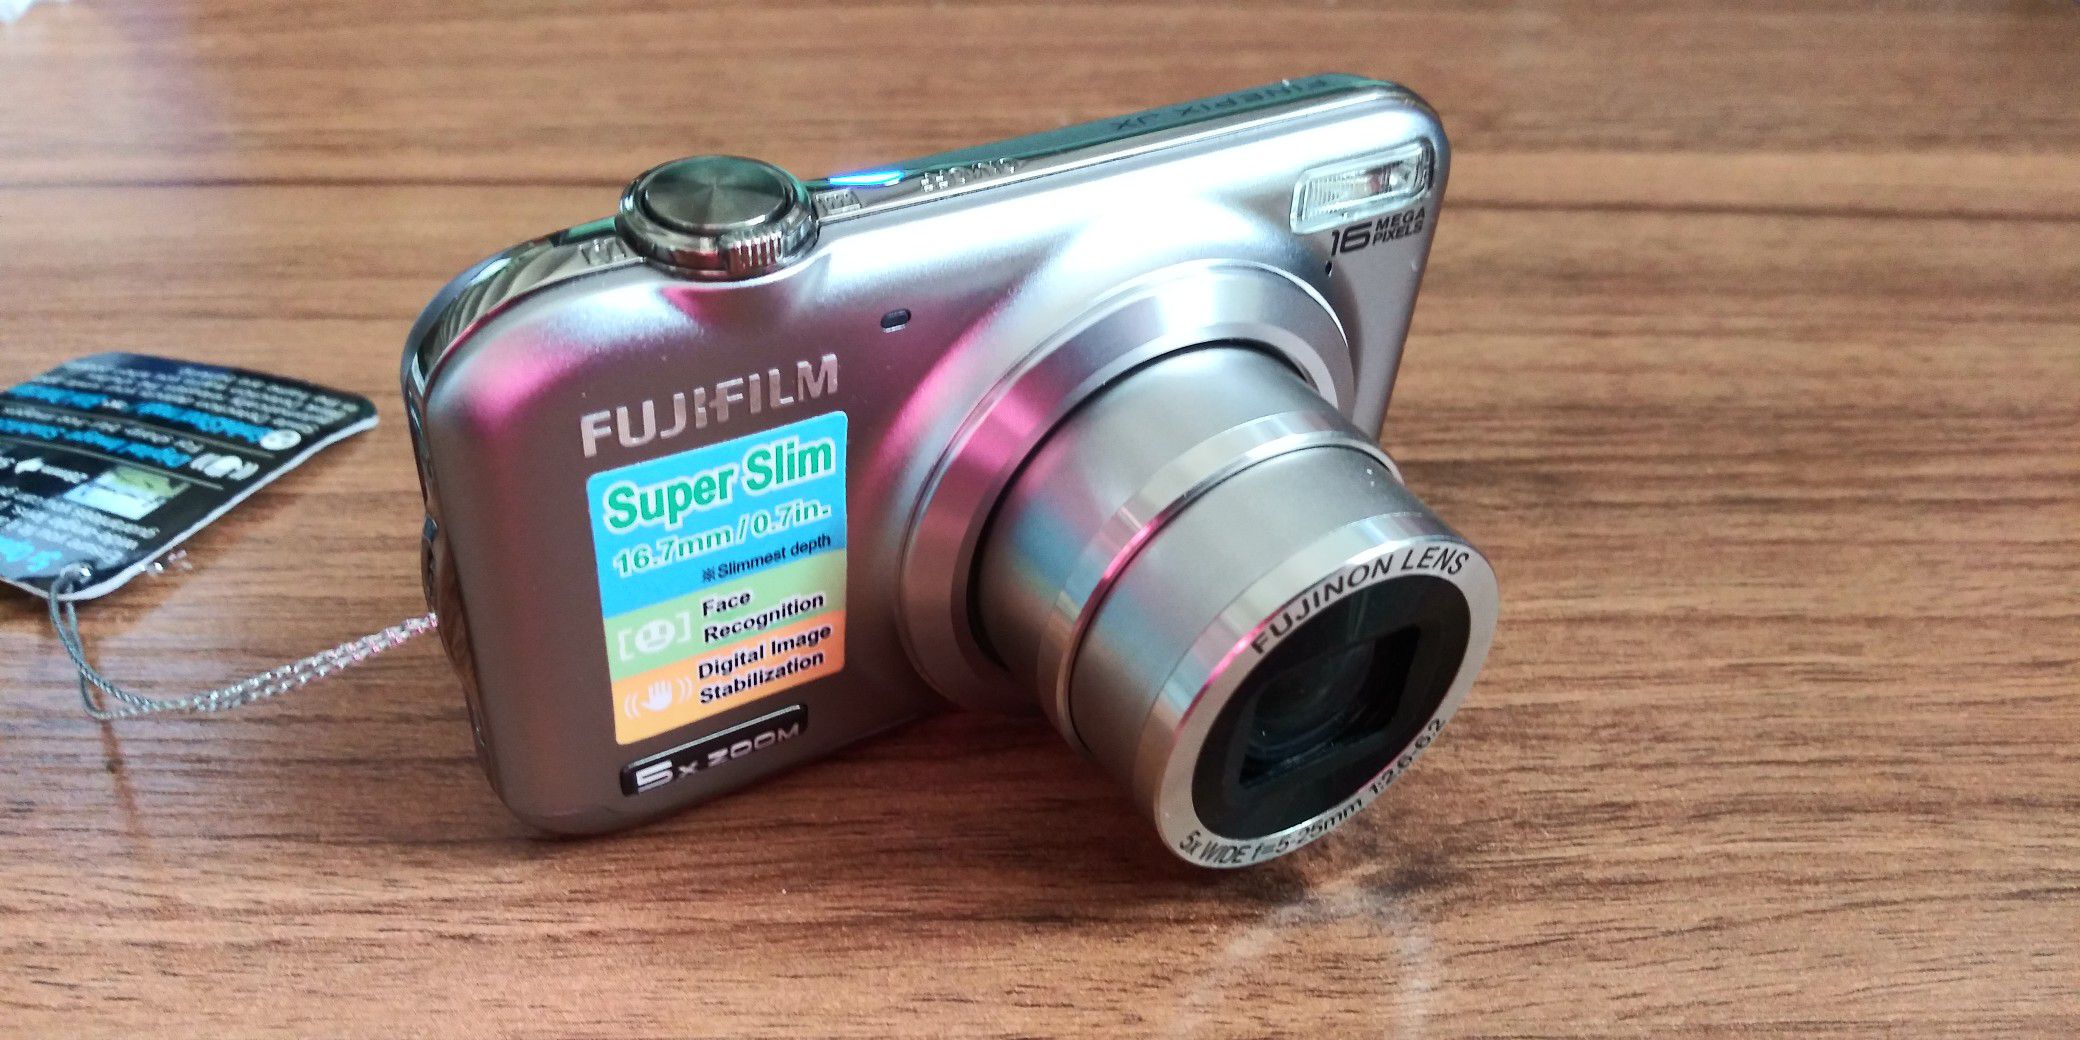 Fujifilm JX400 Digital Camera